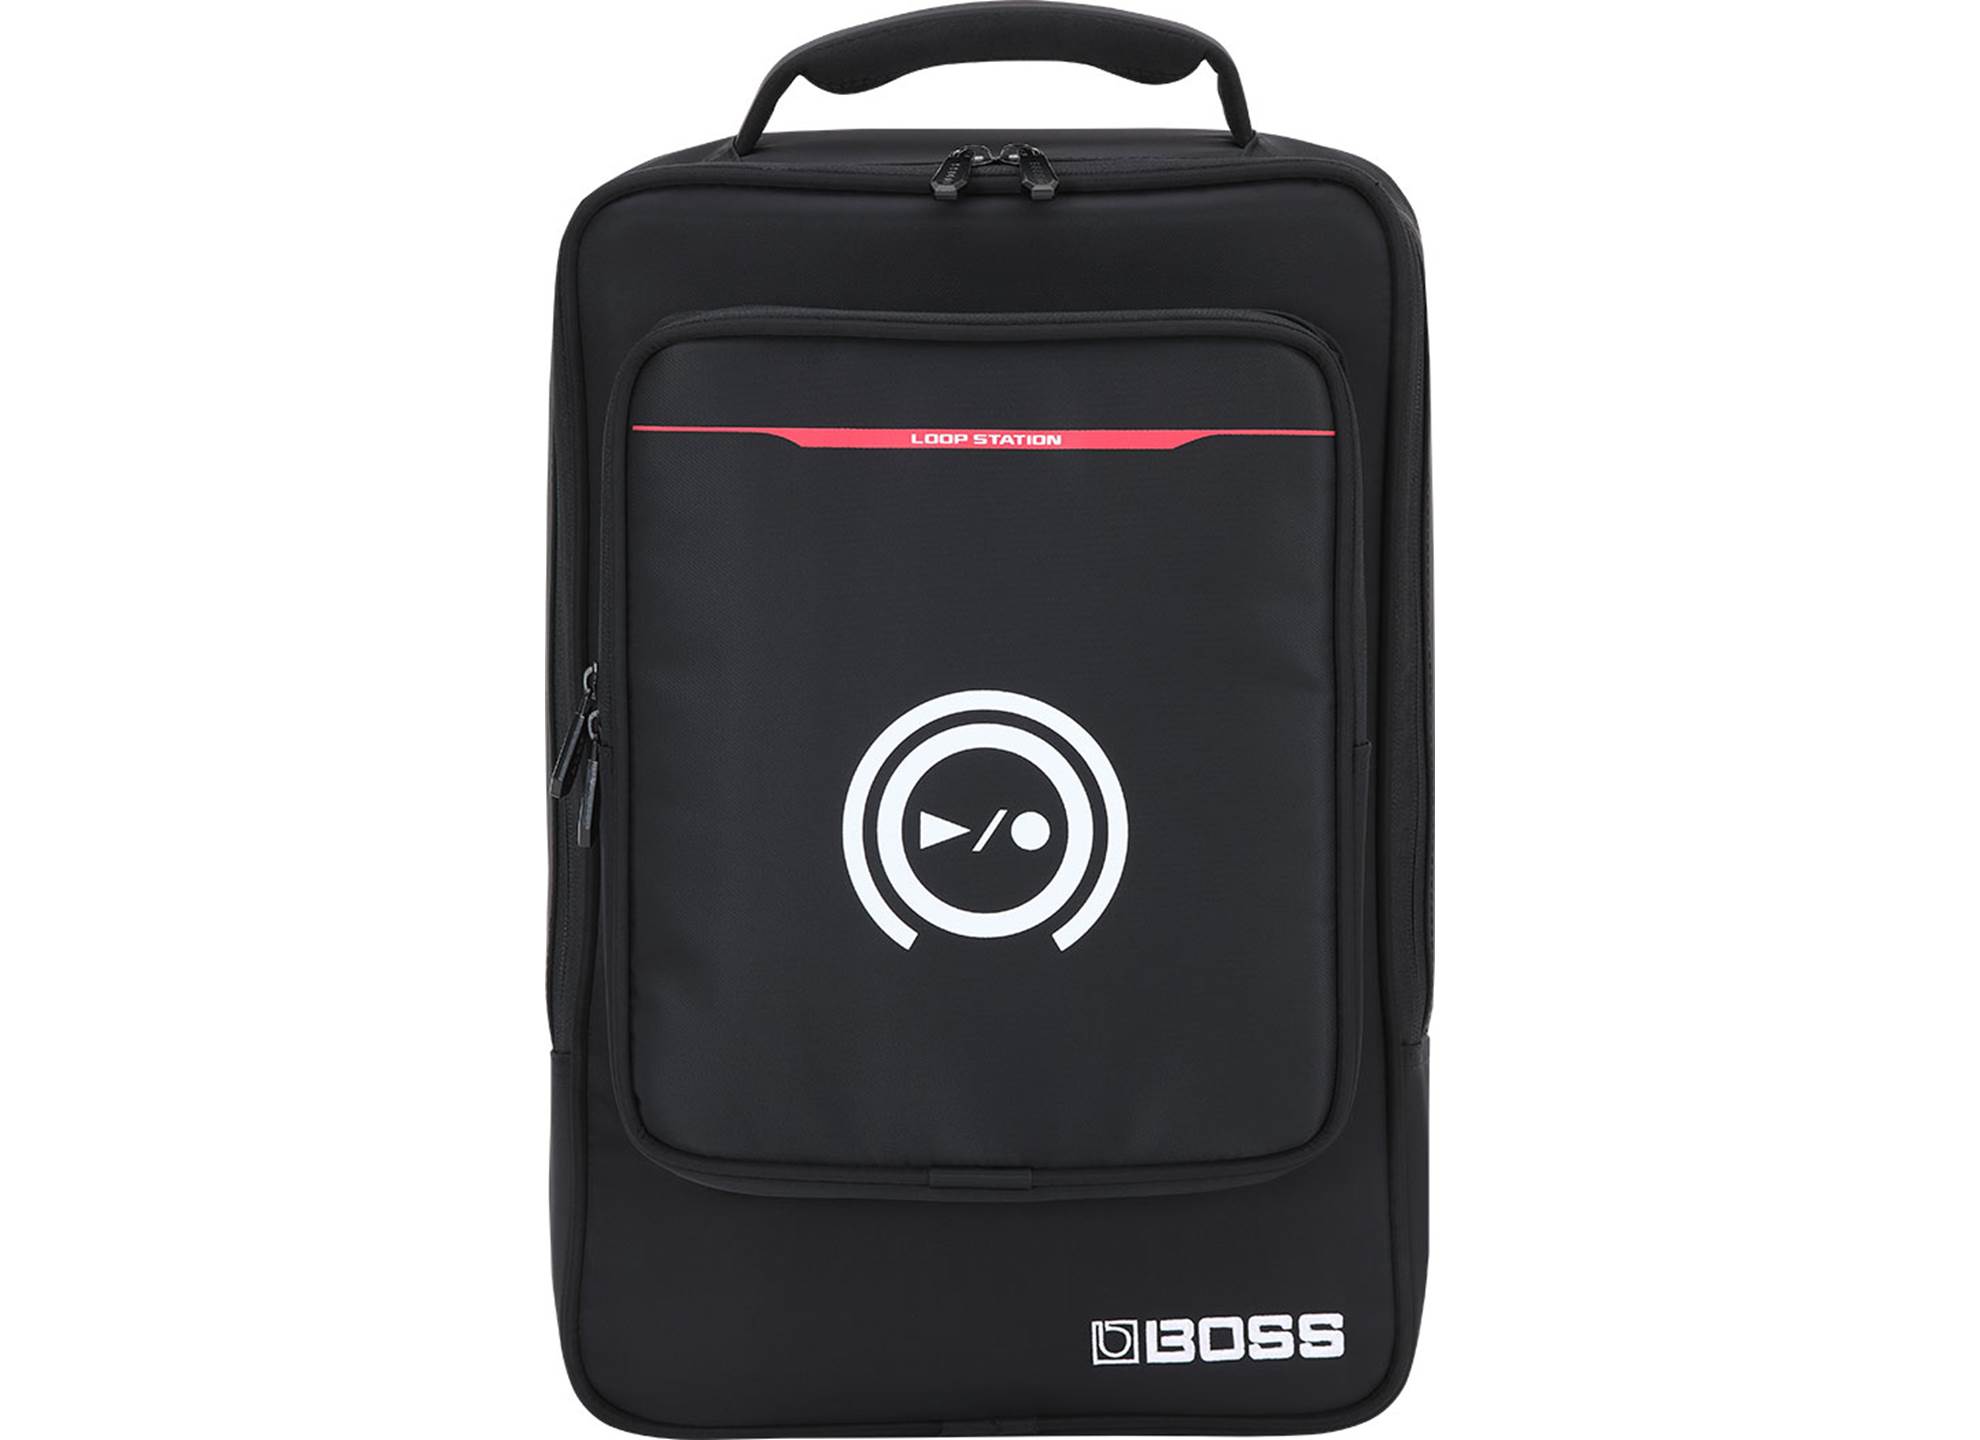 CB-RC505 Carrying bag